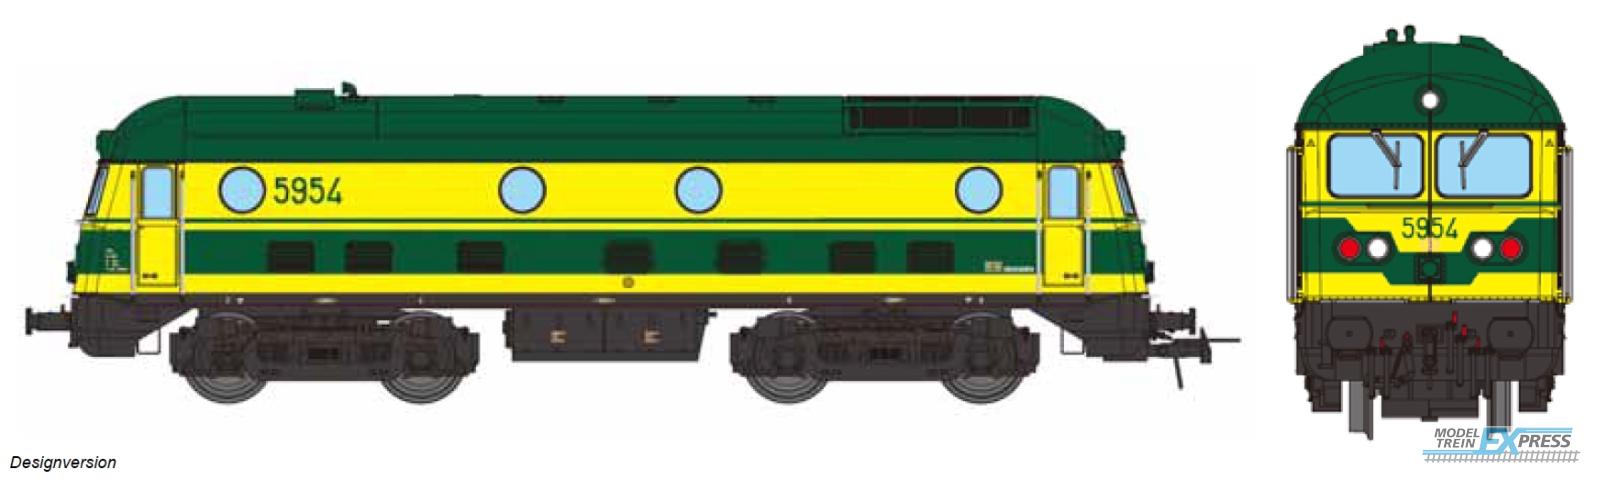 B-Models 9311.05 Diesel 5954, AC. 3-Rail Digital Sound